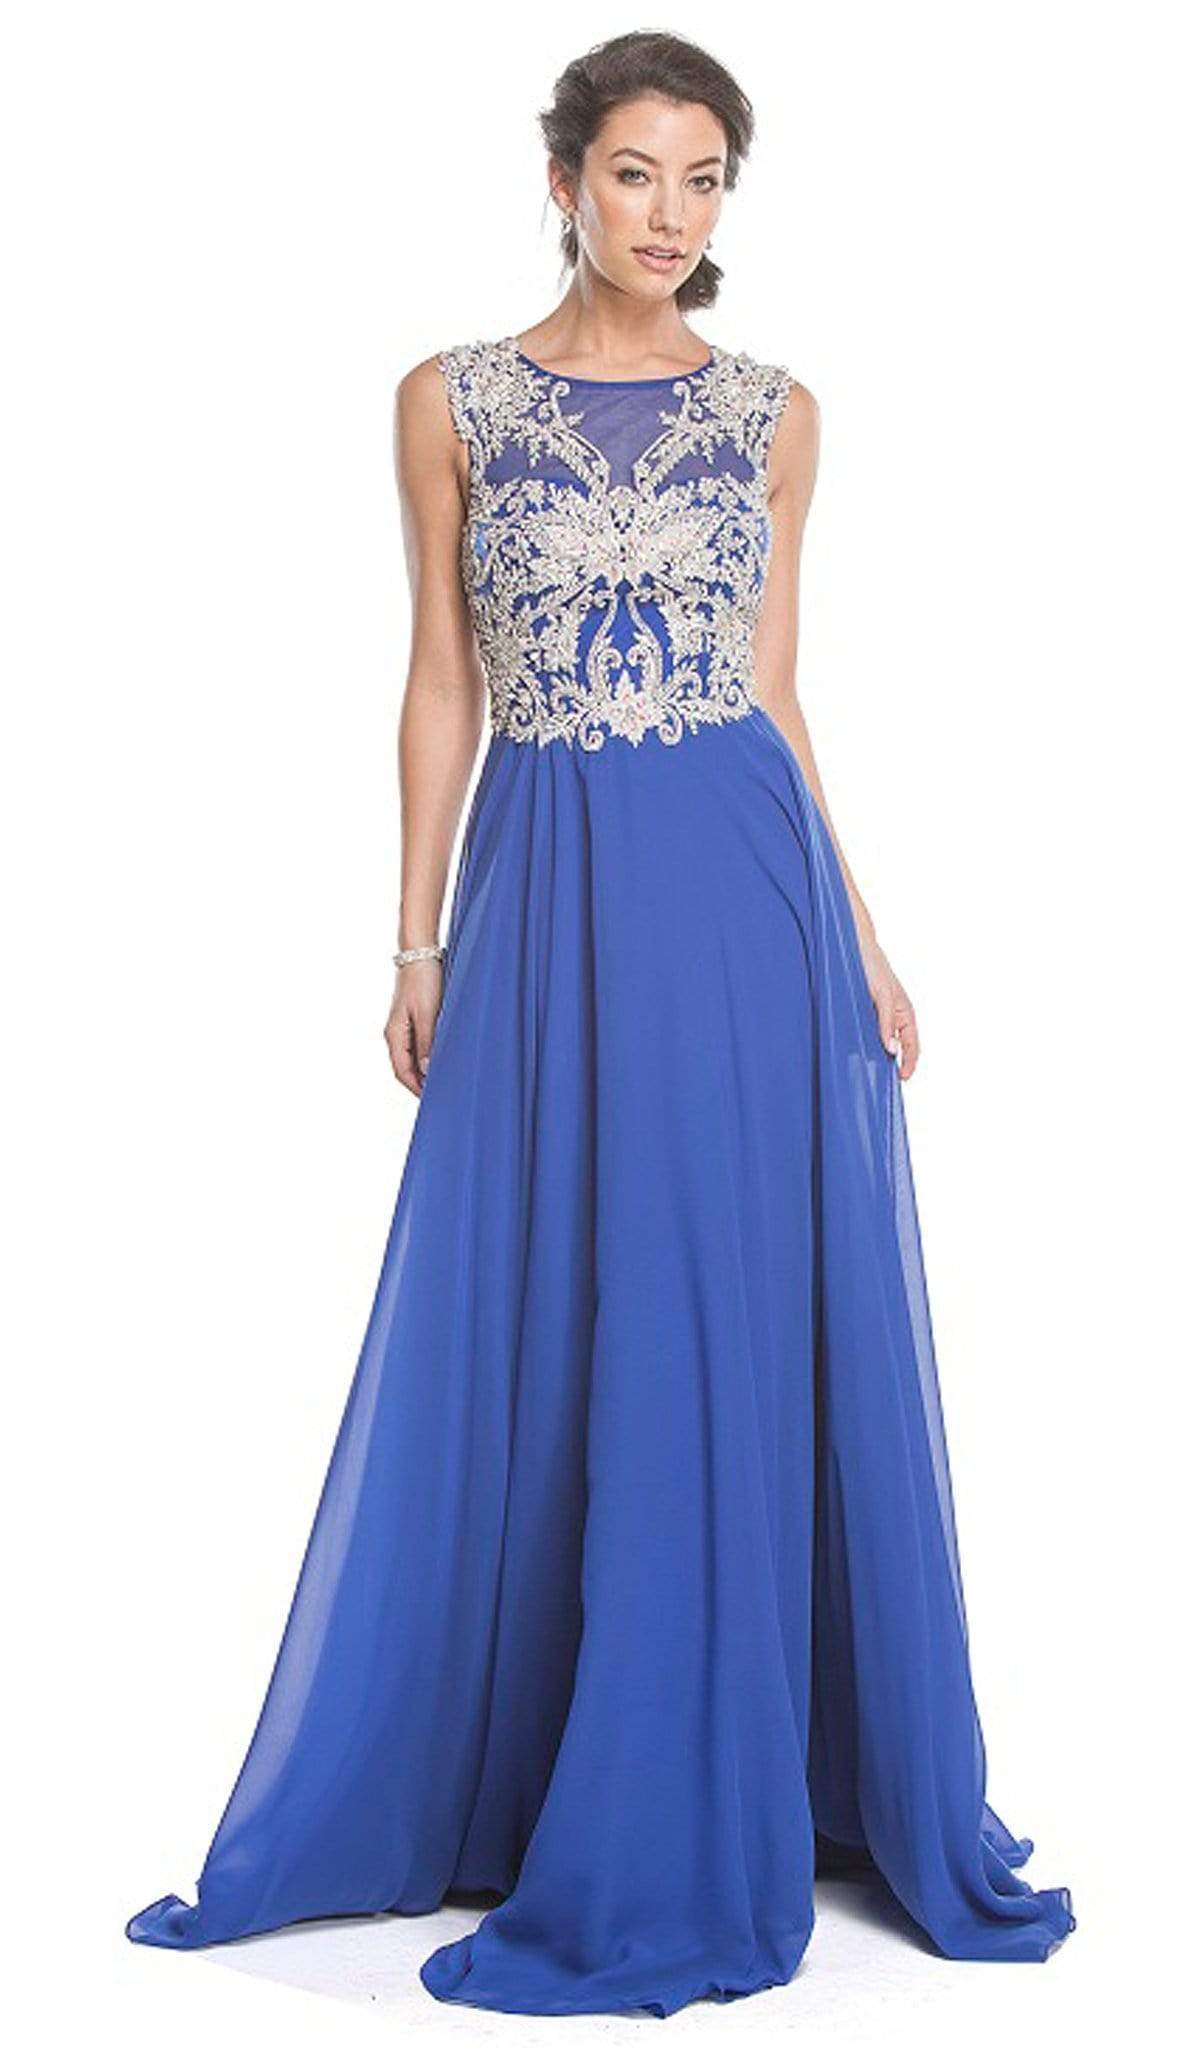 Image of Aspeed Design - Embellished Sheer Bateau A-line Prom Dress